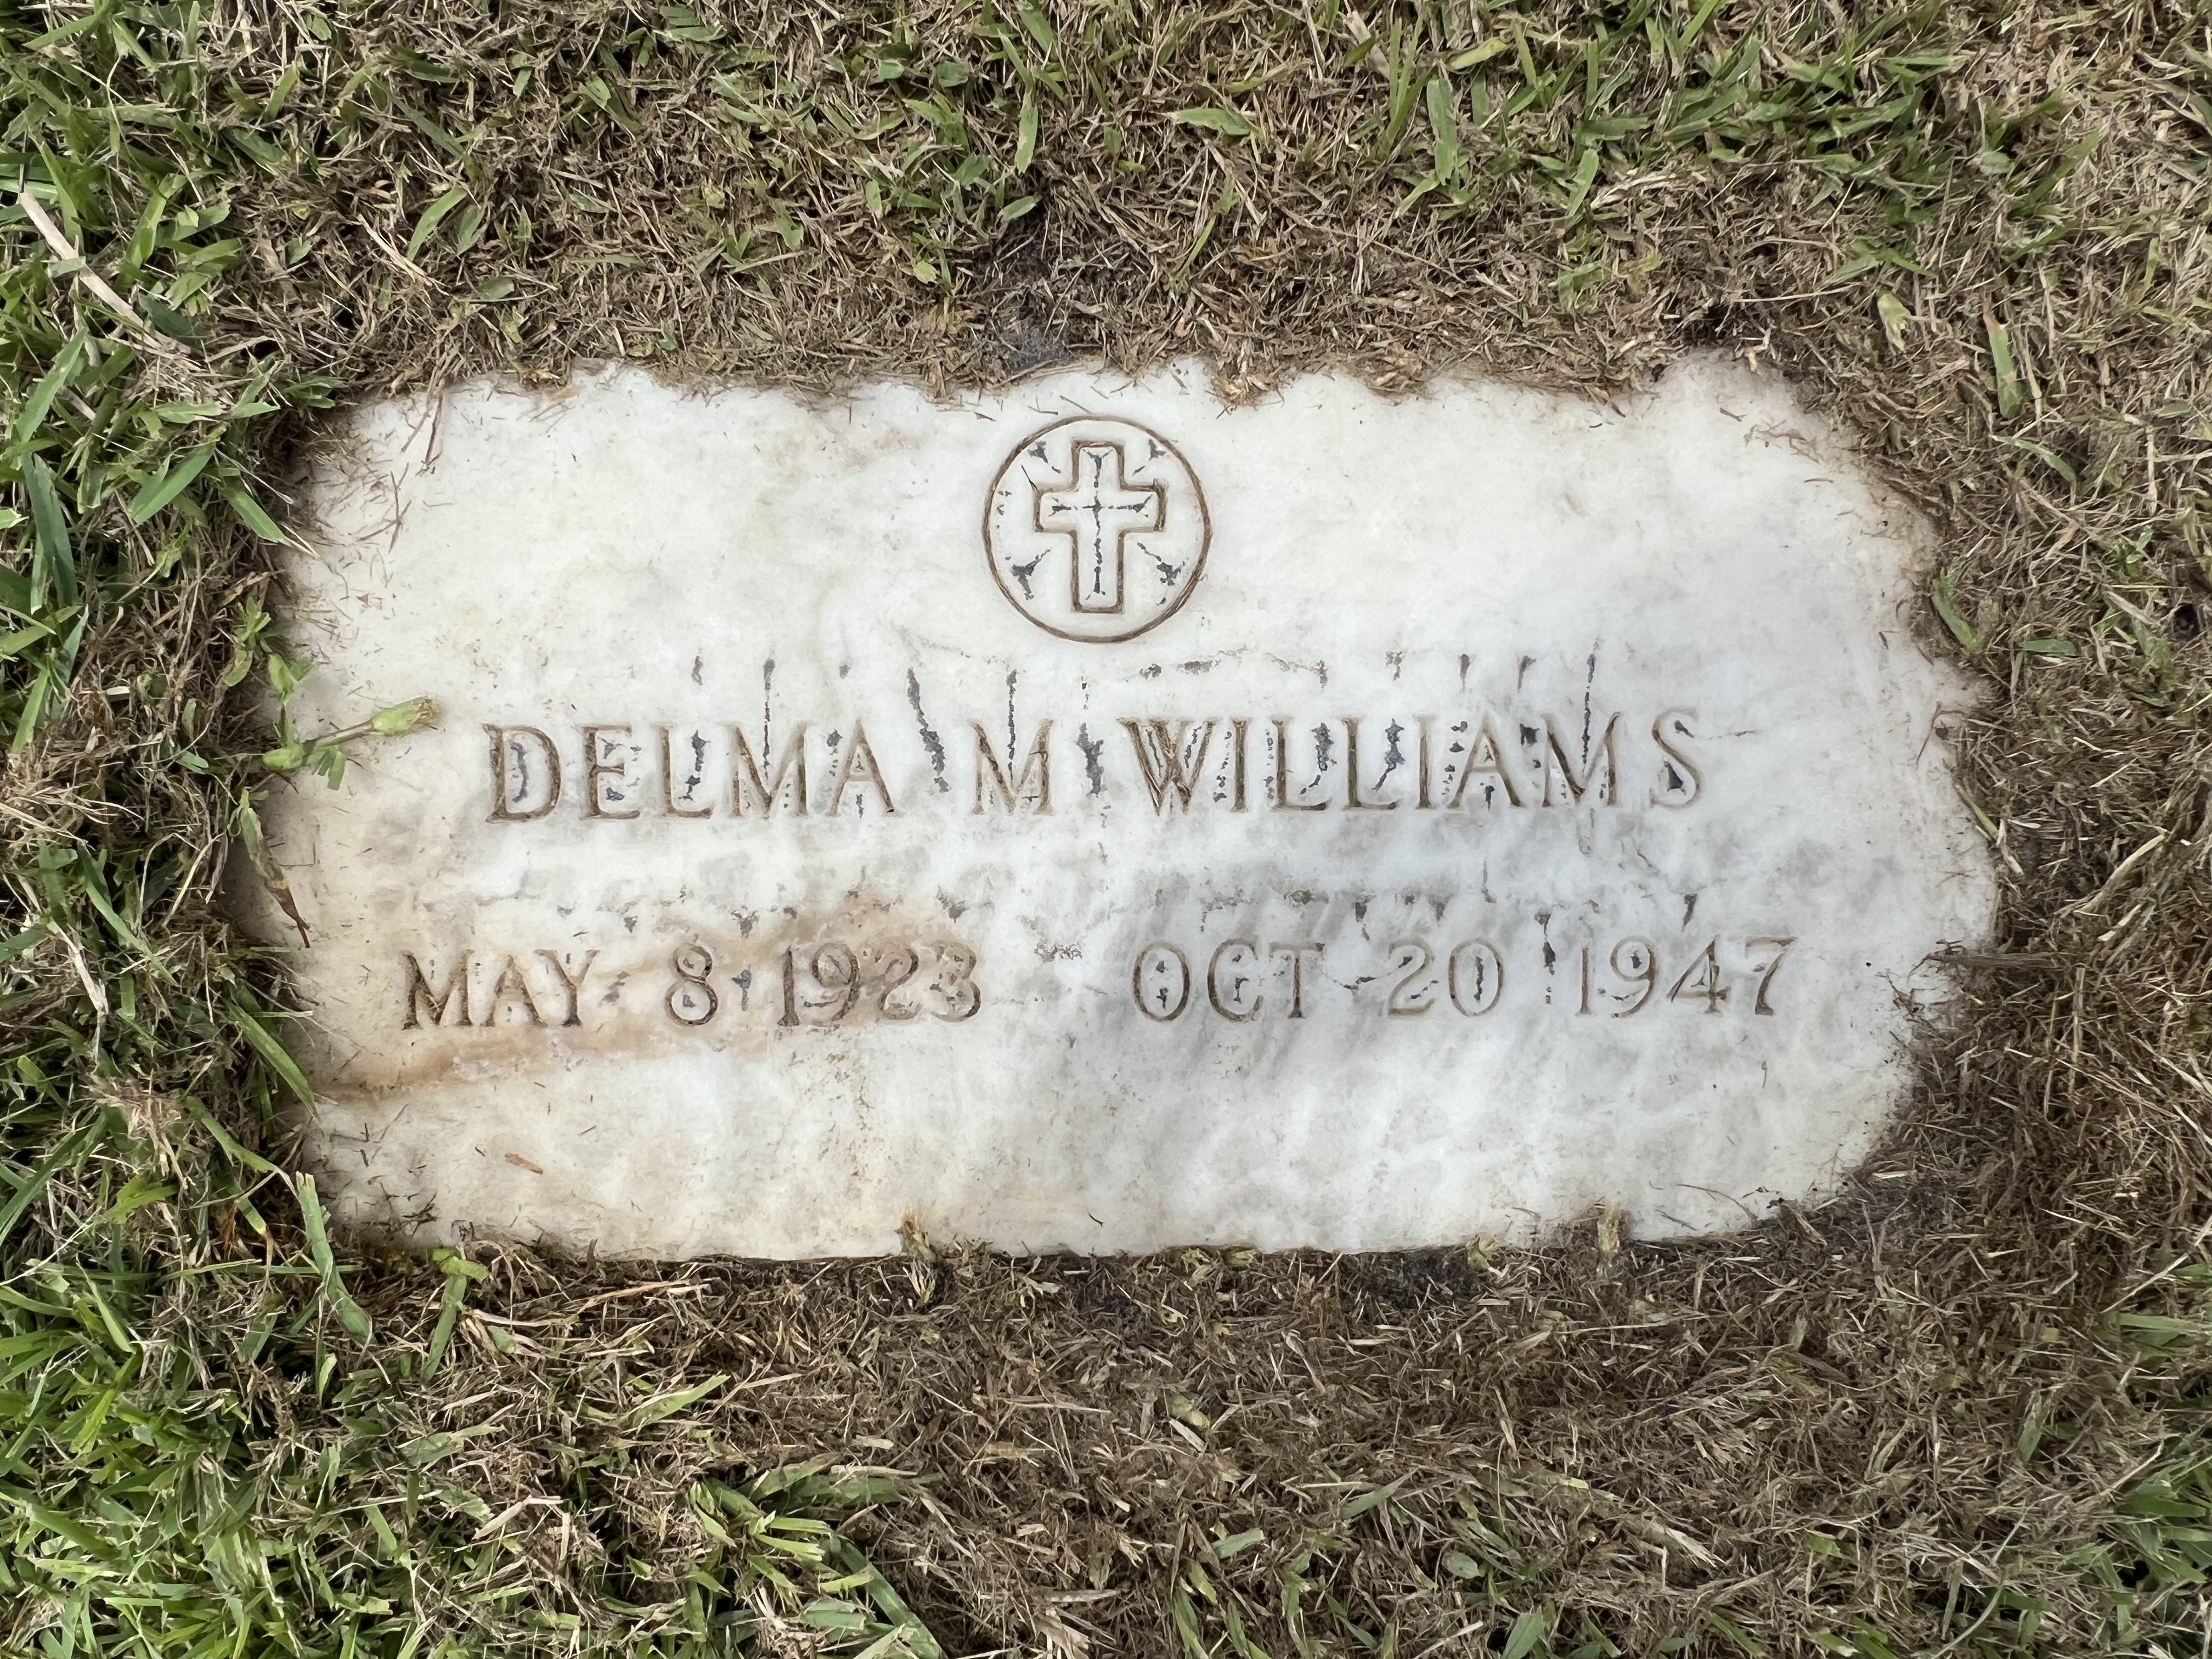 Delma M Williams